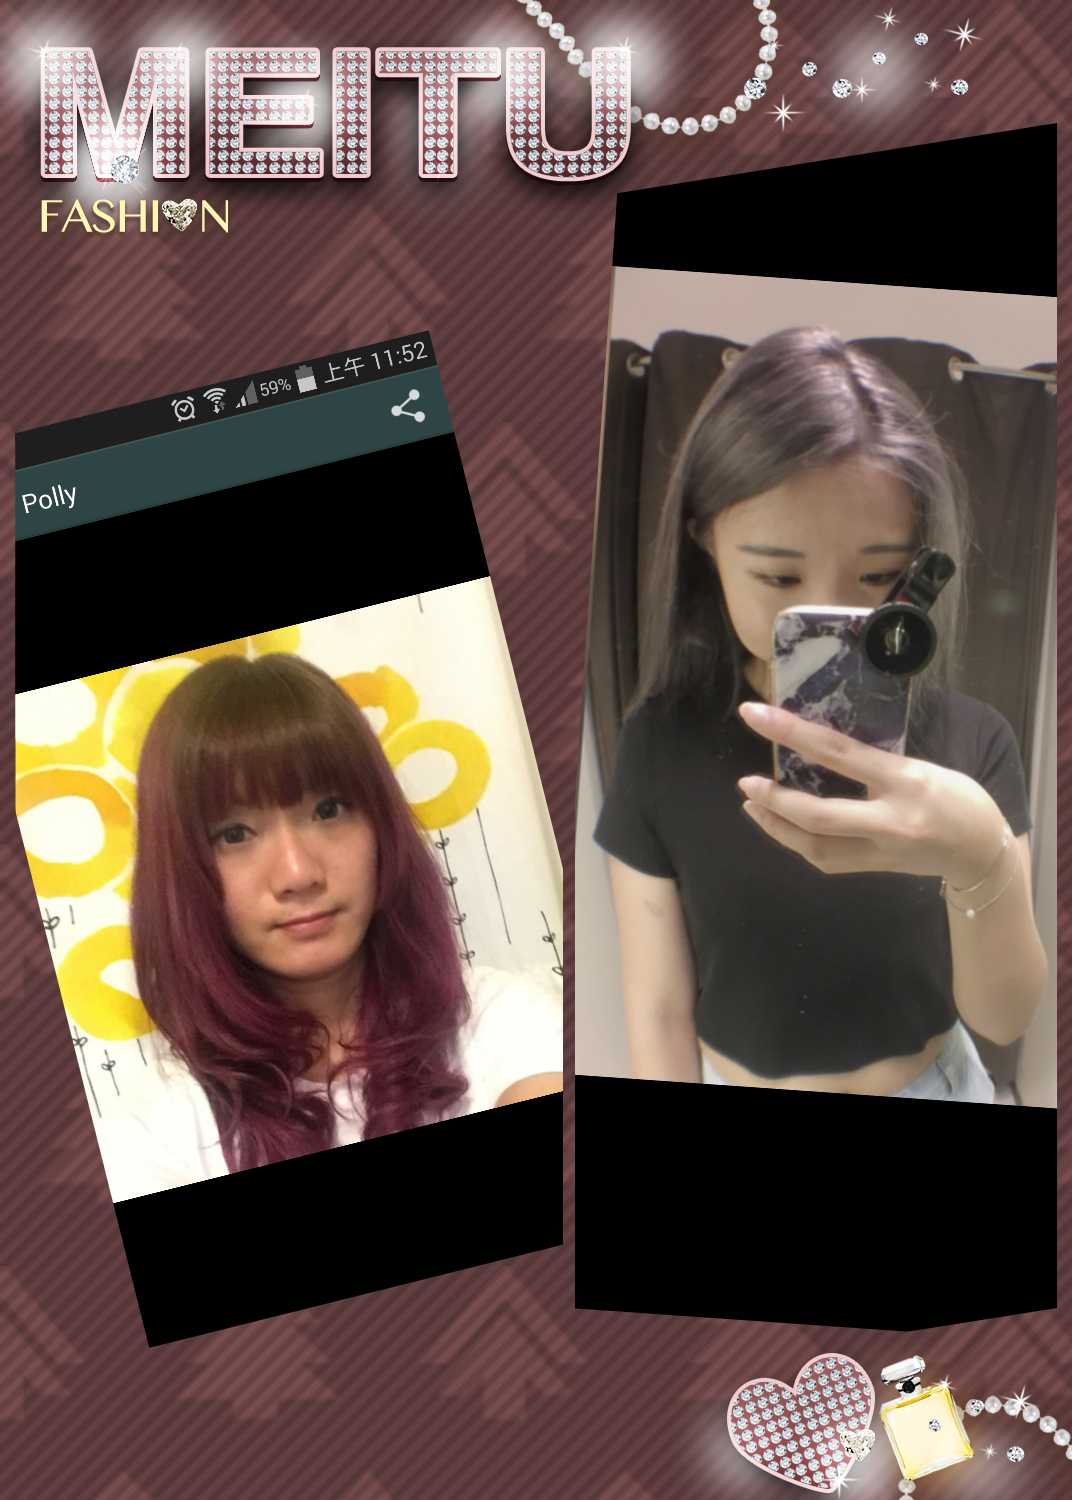 香港美髮網 HK Hair Salon 髮型屋Salon / 髮型師: Candy